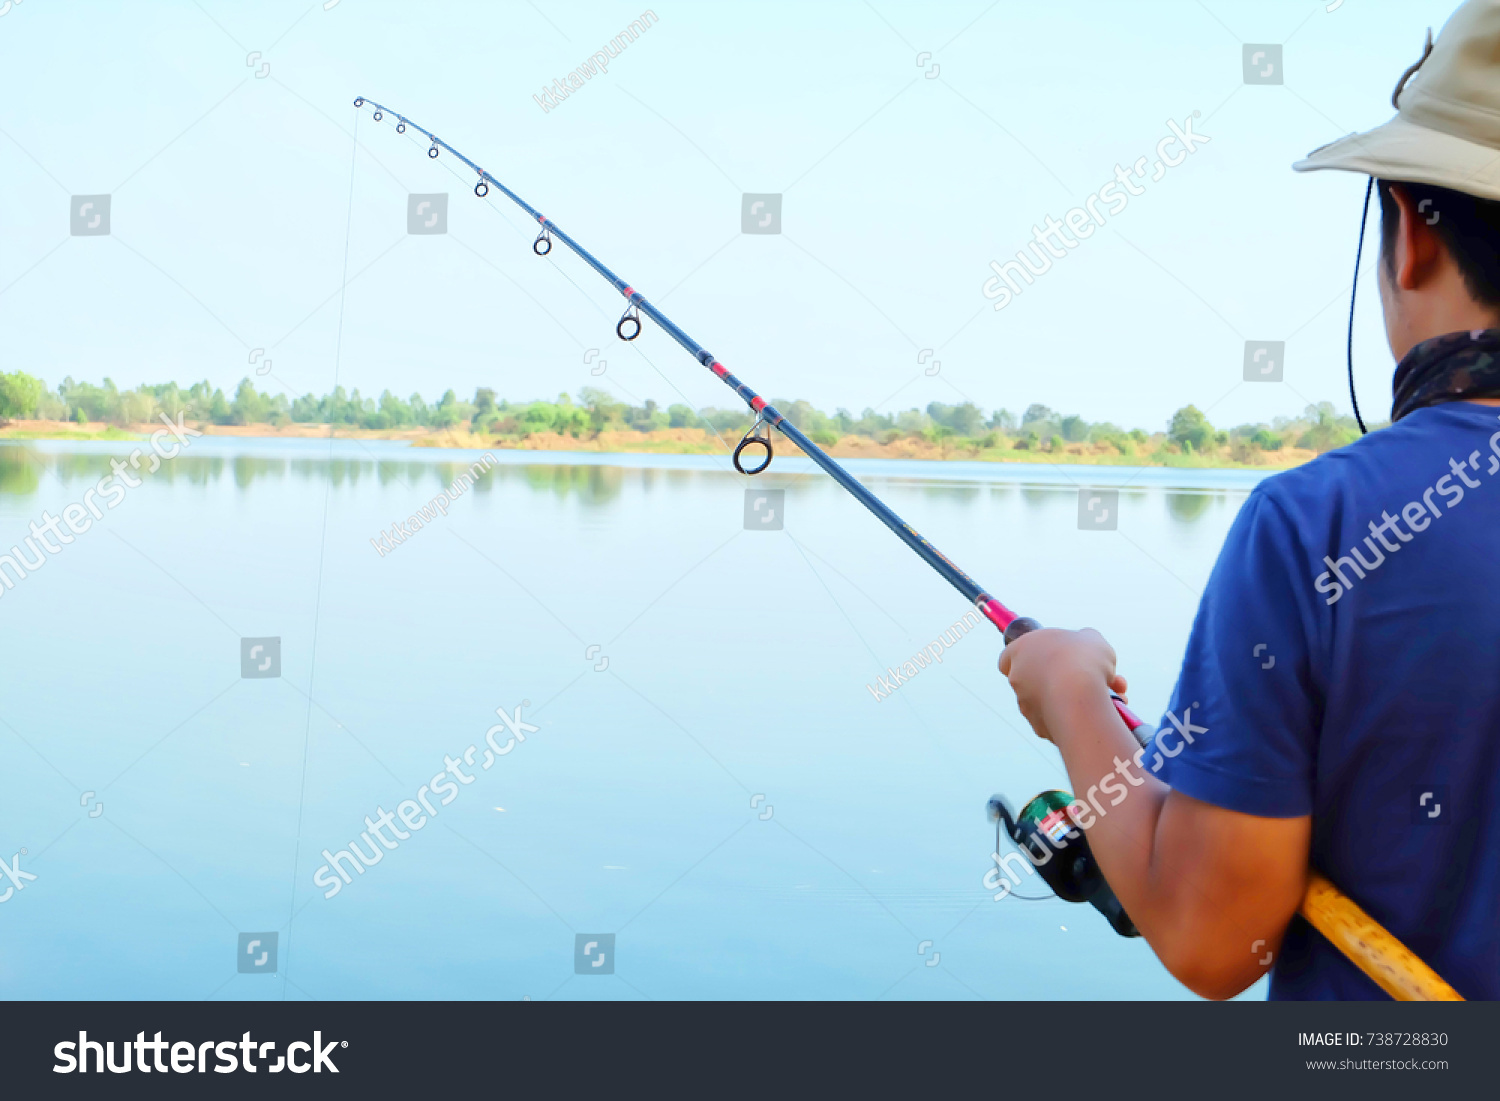 Young man fishing at lake, Fishing as recreation and sports displayed by fisherman at lake #738728830